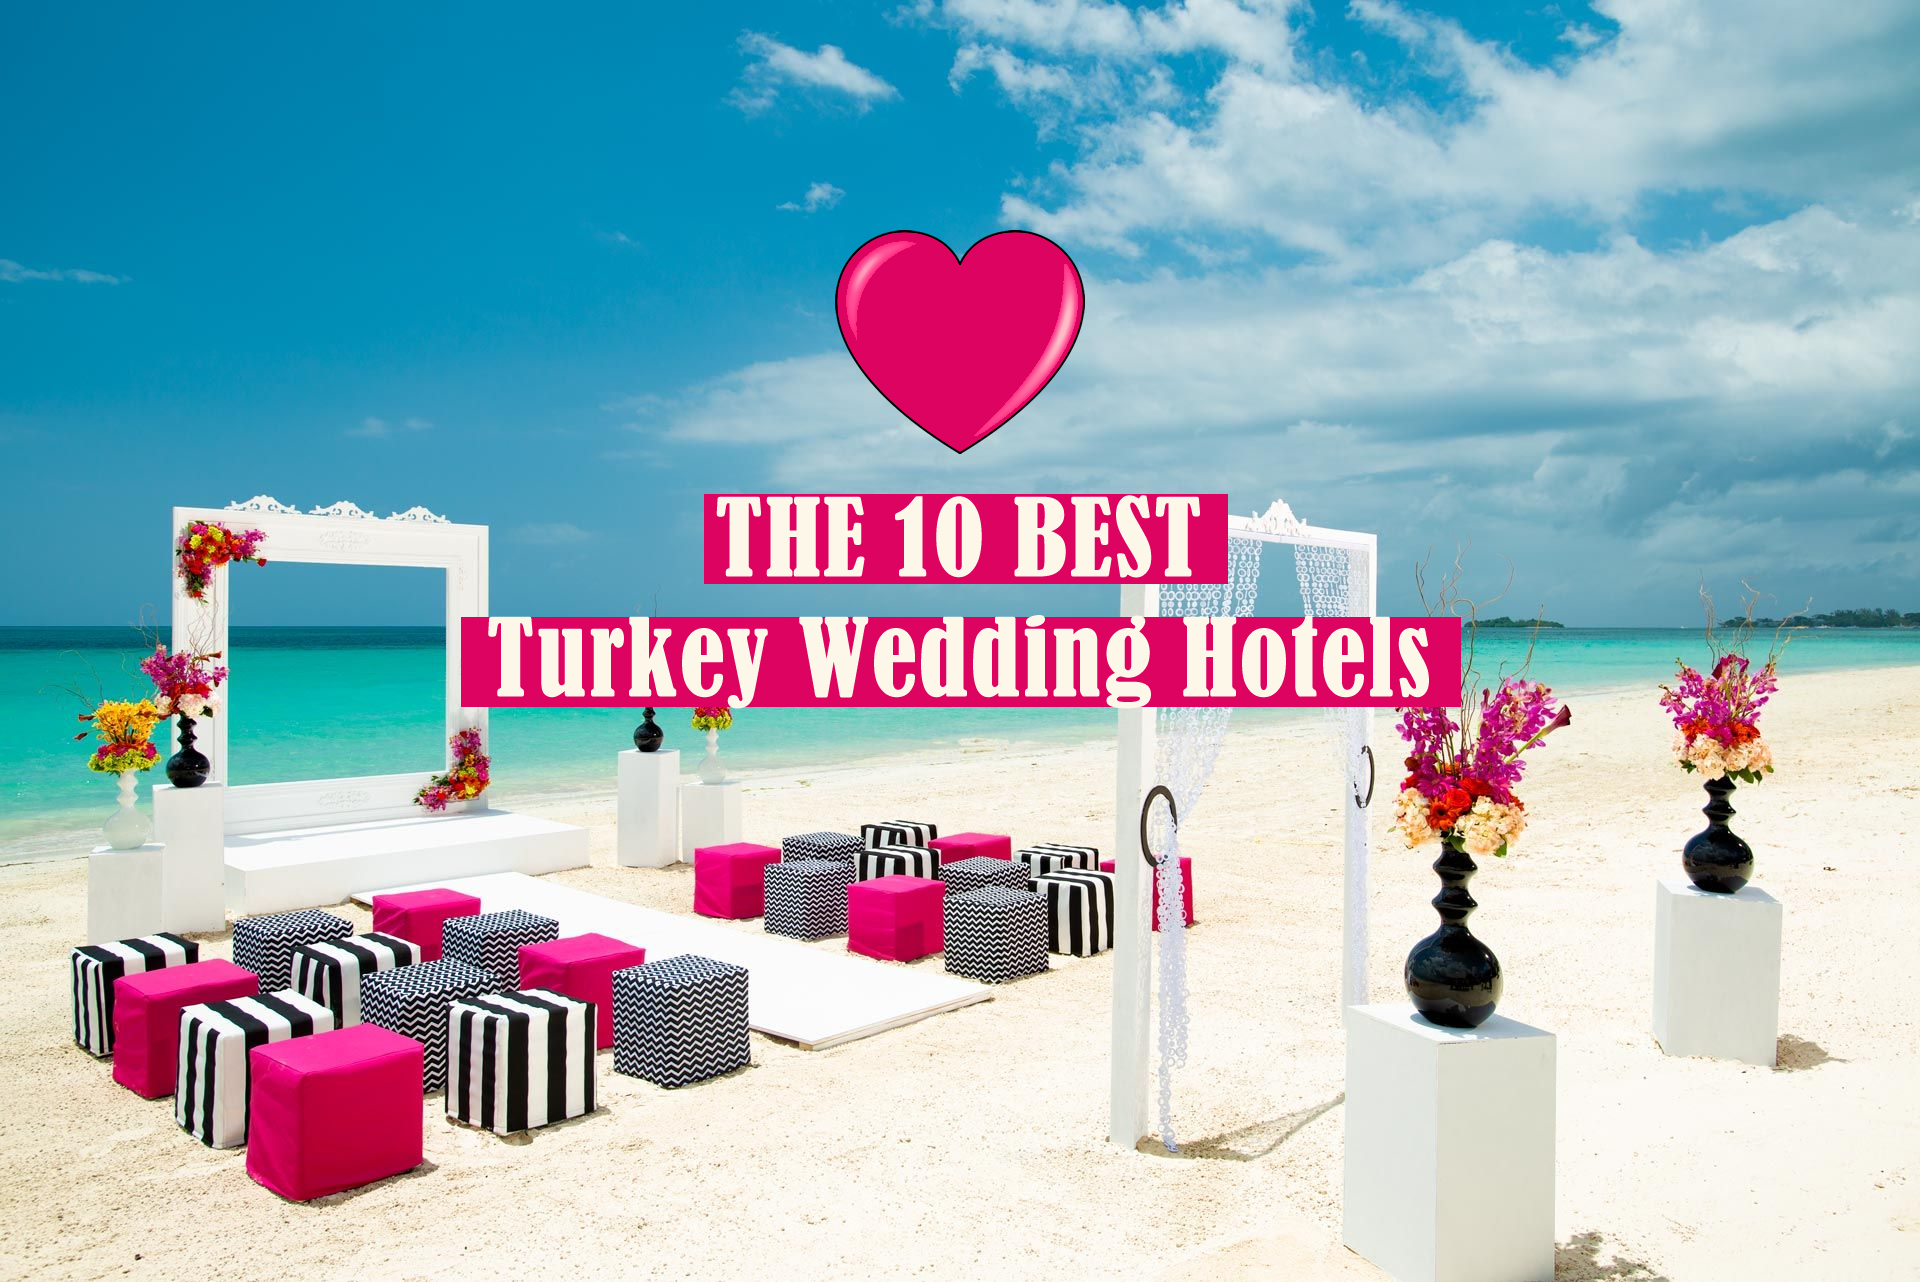 THE 10 BEST Turkey Wedding Hotels